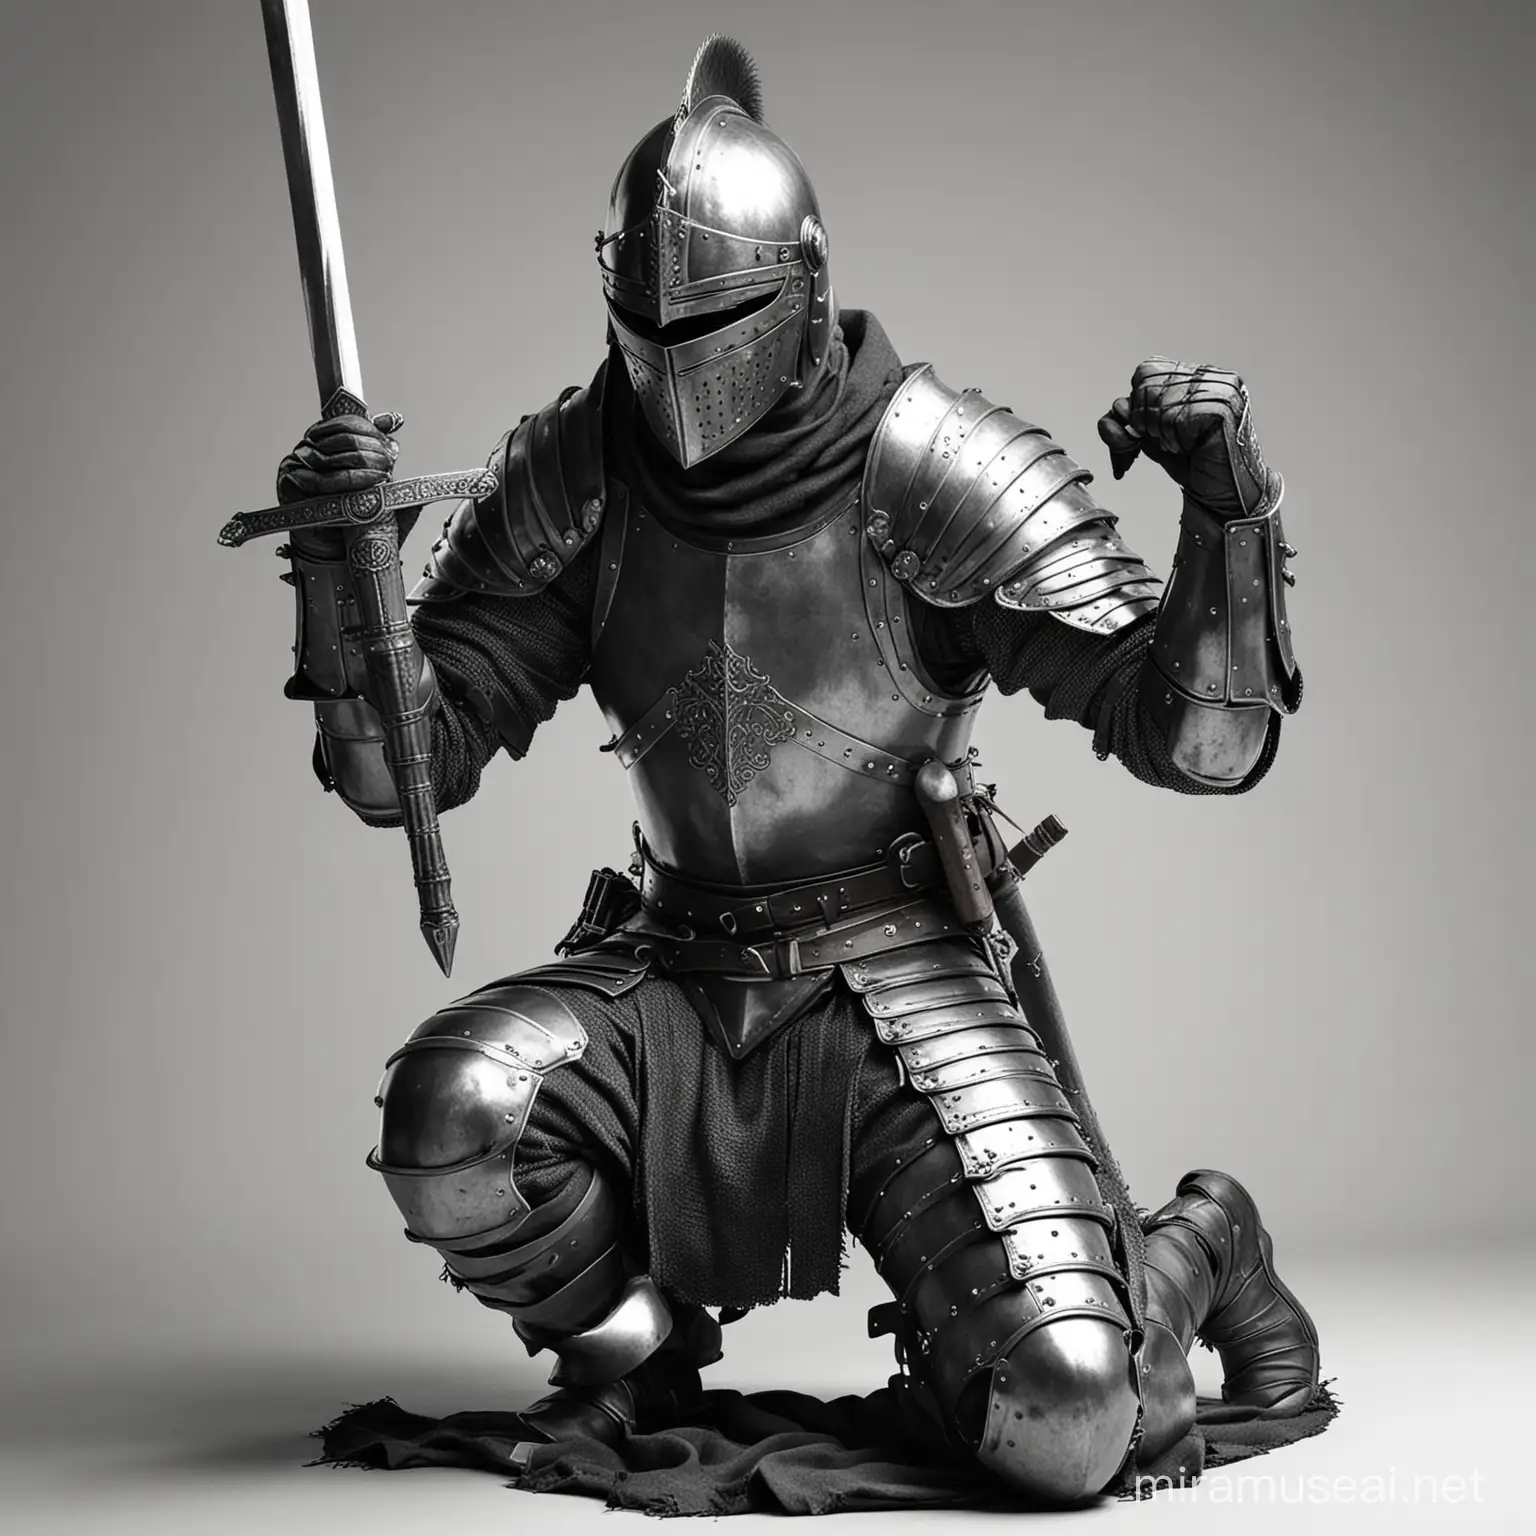 Imagen realista de caballero medieval, arrodillado, agarrando la espada con las dos manos, la espada apoyada en su casco y el casco cubríendo toda su cara, en blanco y negro con el fondo blanco